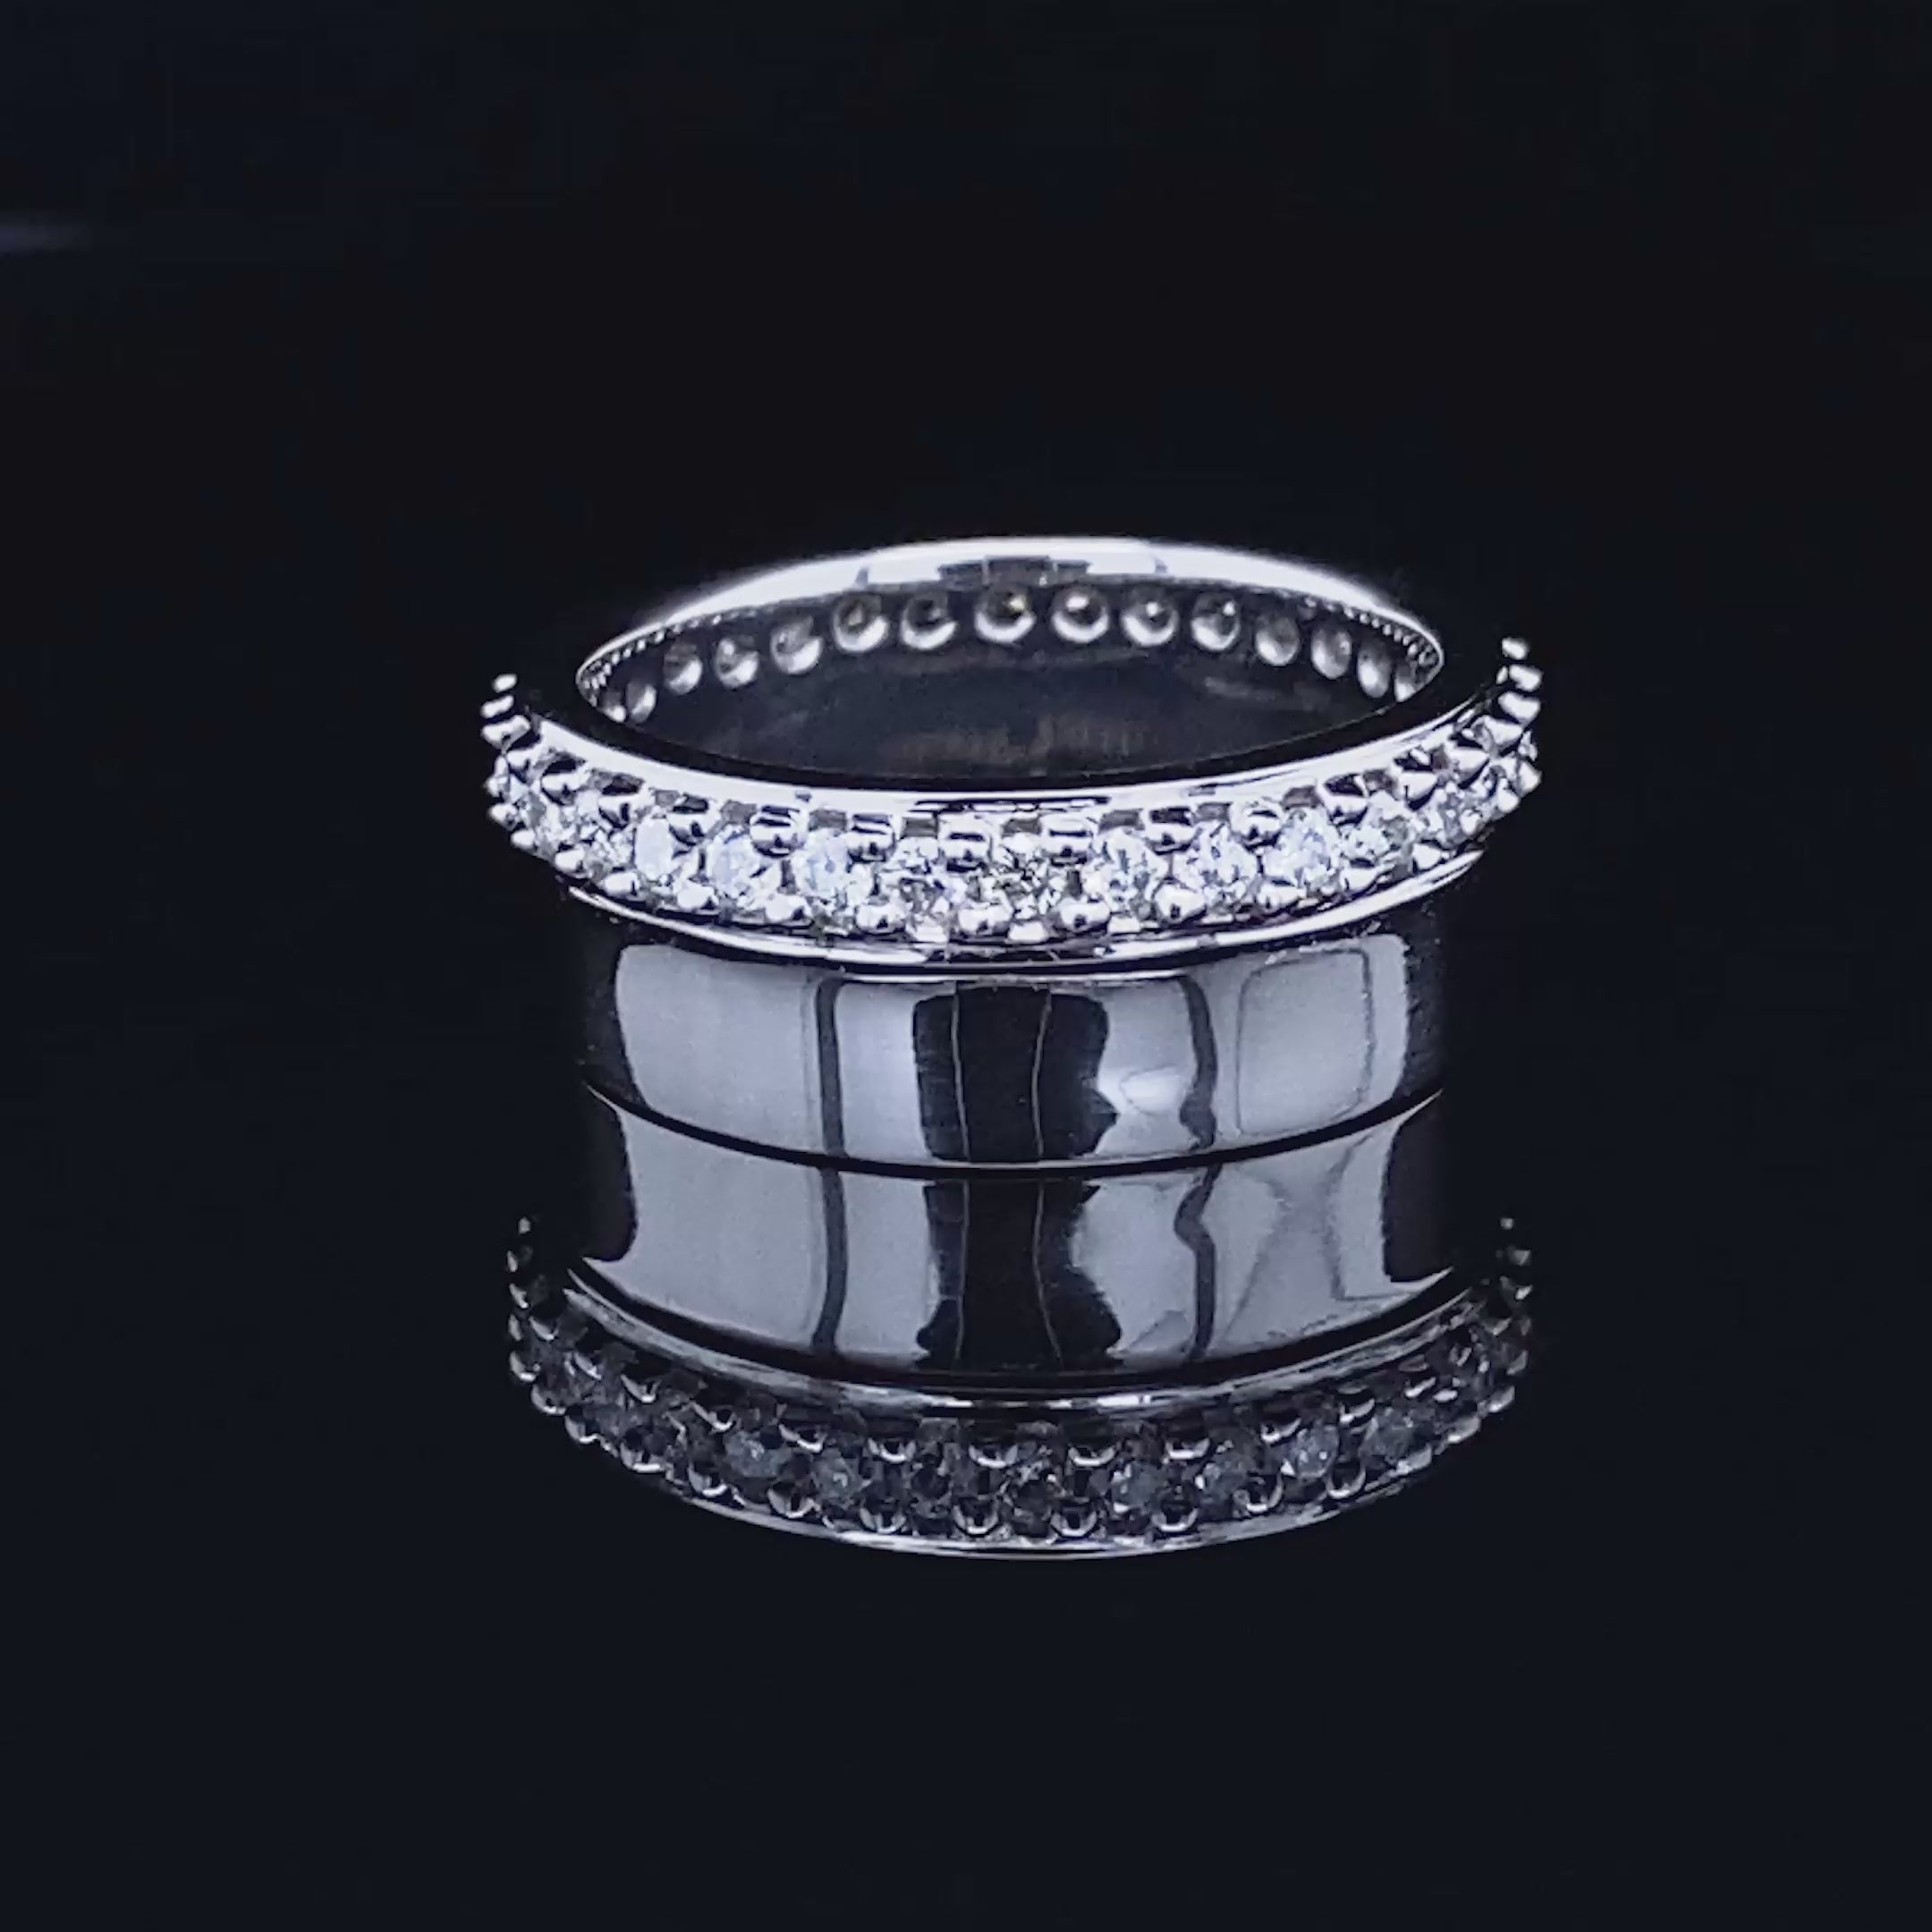 Exclusive 0.75 CT Round Cut Diamond Wedding Ring in Platinum